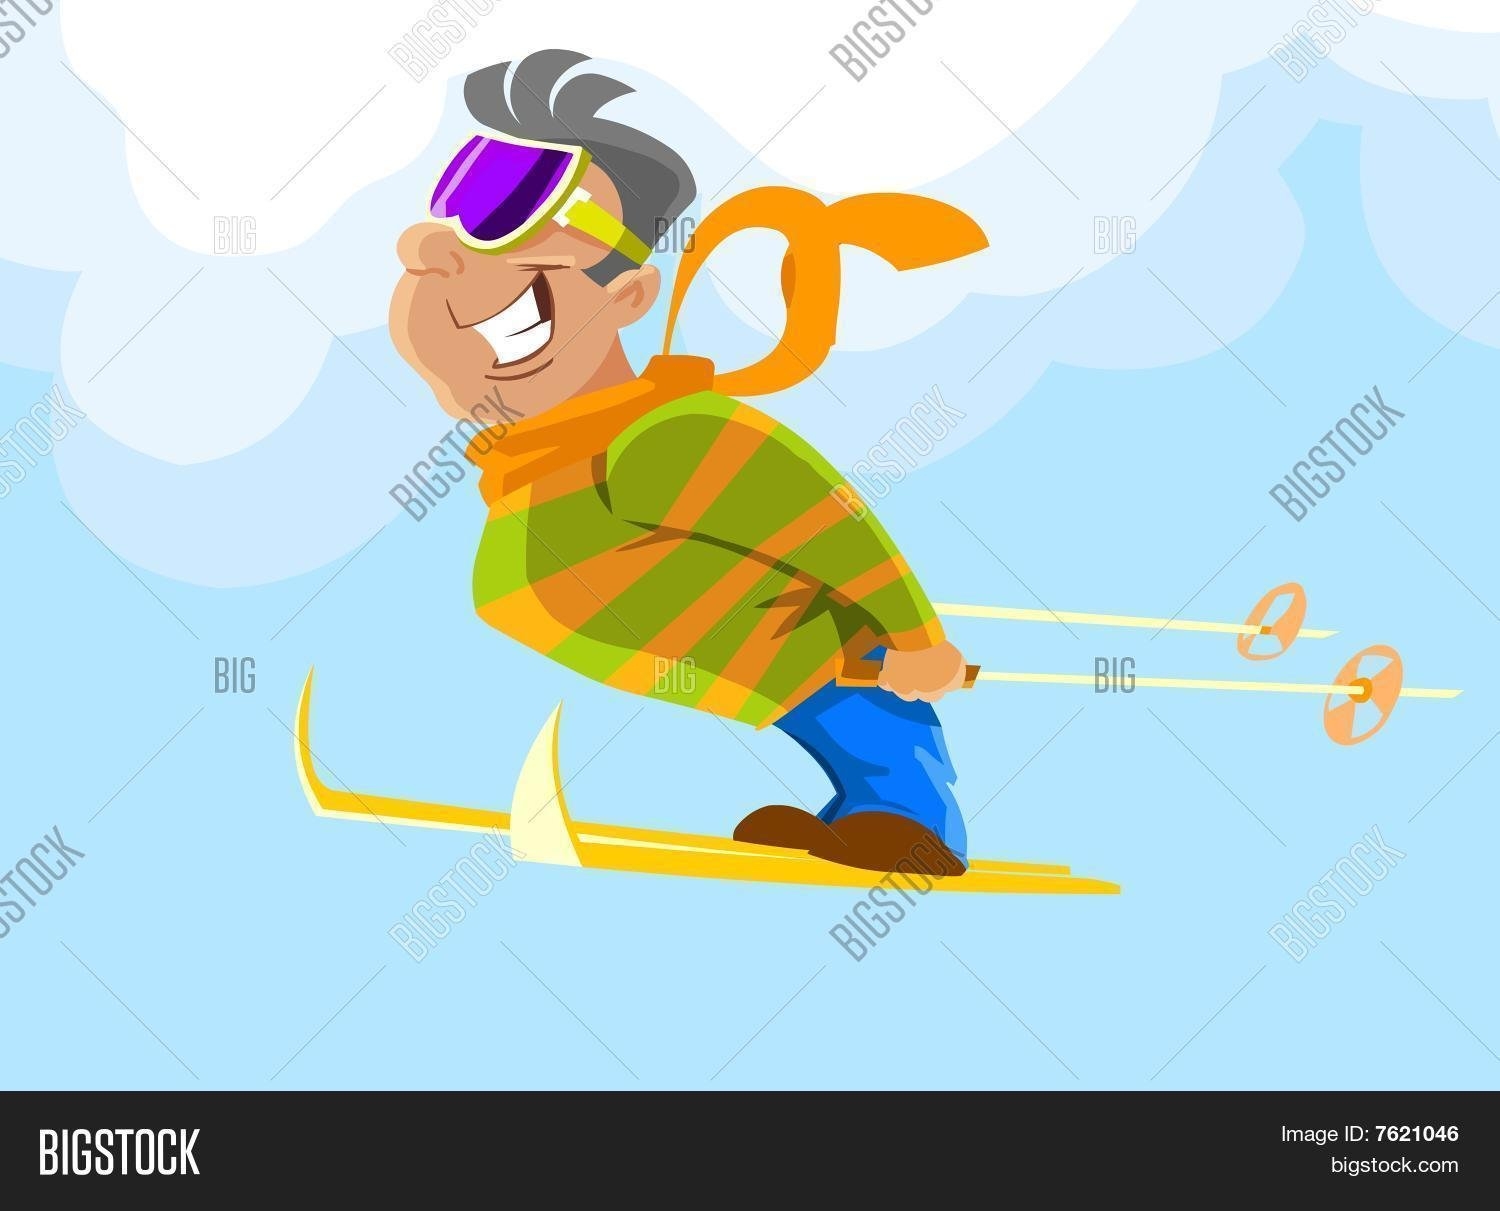 Впереди нас ехали спортсмены лыжники. С днём рождения лыжнику. Веселый лыжник. Смешной лыжник. Лыжник рисунок.